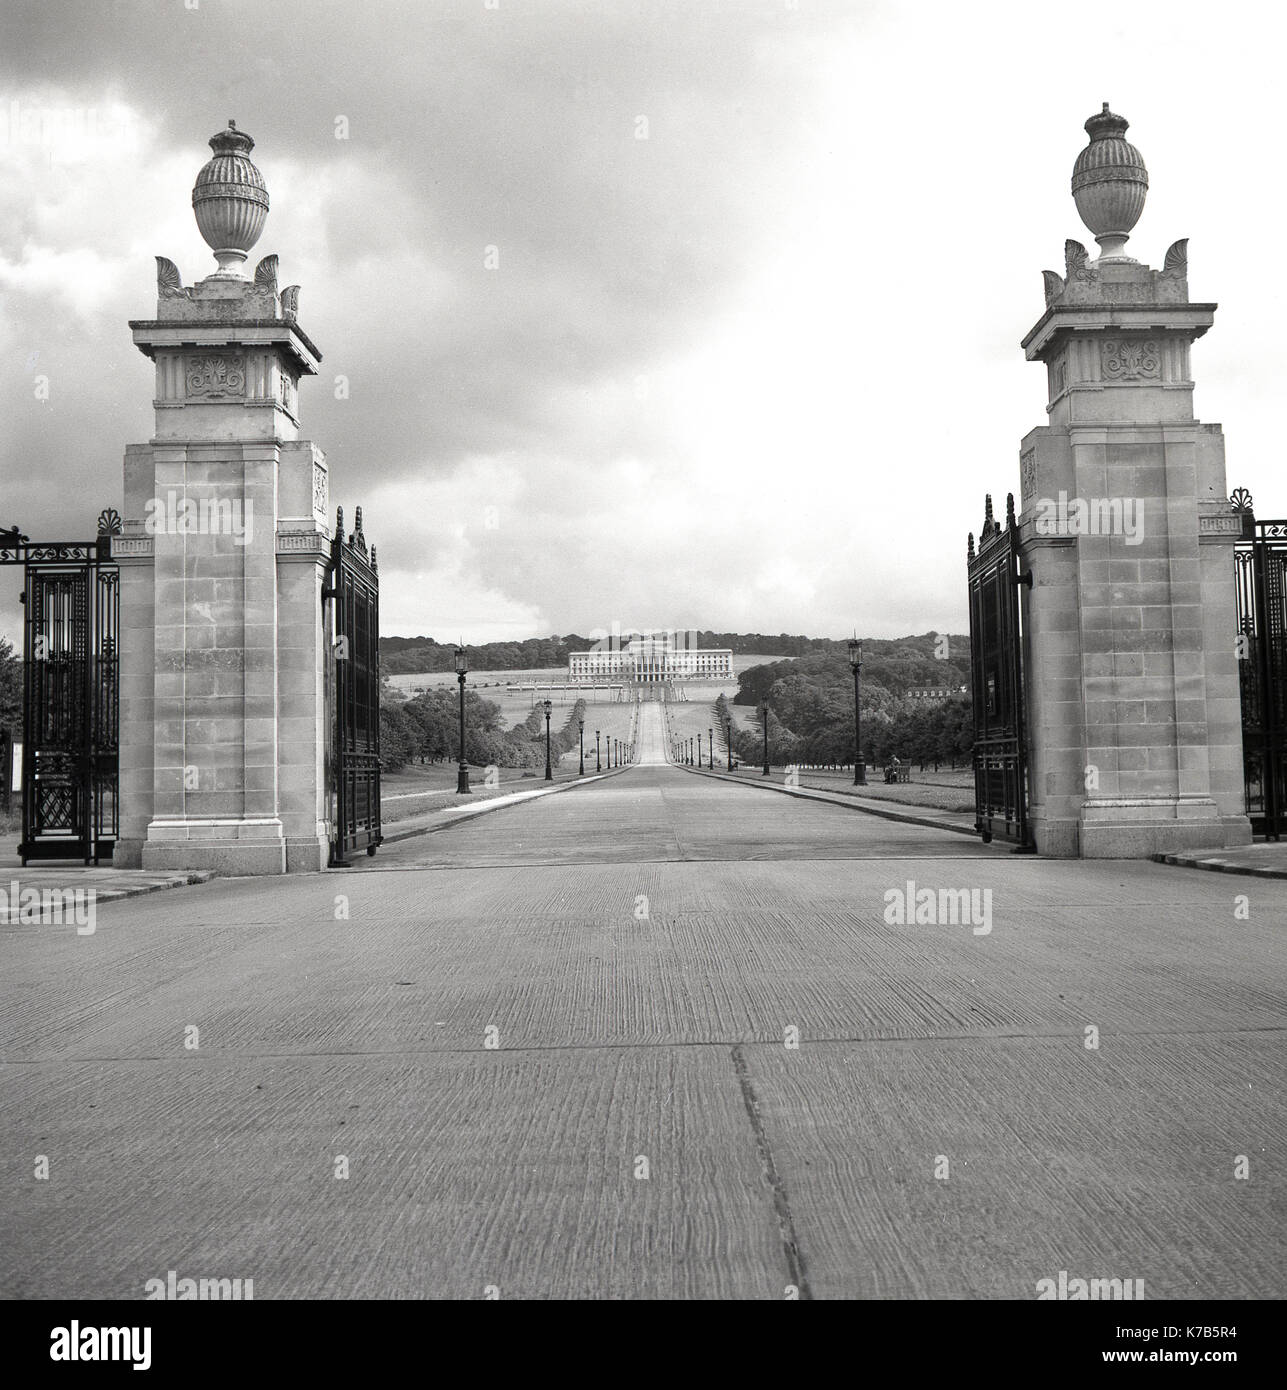 1950, foto histórica de las puertas y la entrada al parque y break de Stormont, Belfast, Irlanda del Norte, con el gran edificio al final del largo camino diseñado en un estilo clásico griego, el hogar de la Asamblea de Irlanda del Norte (Parlamento) desde 1998. Foto de stock